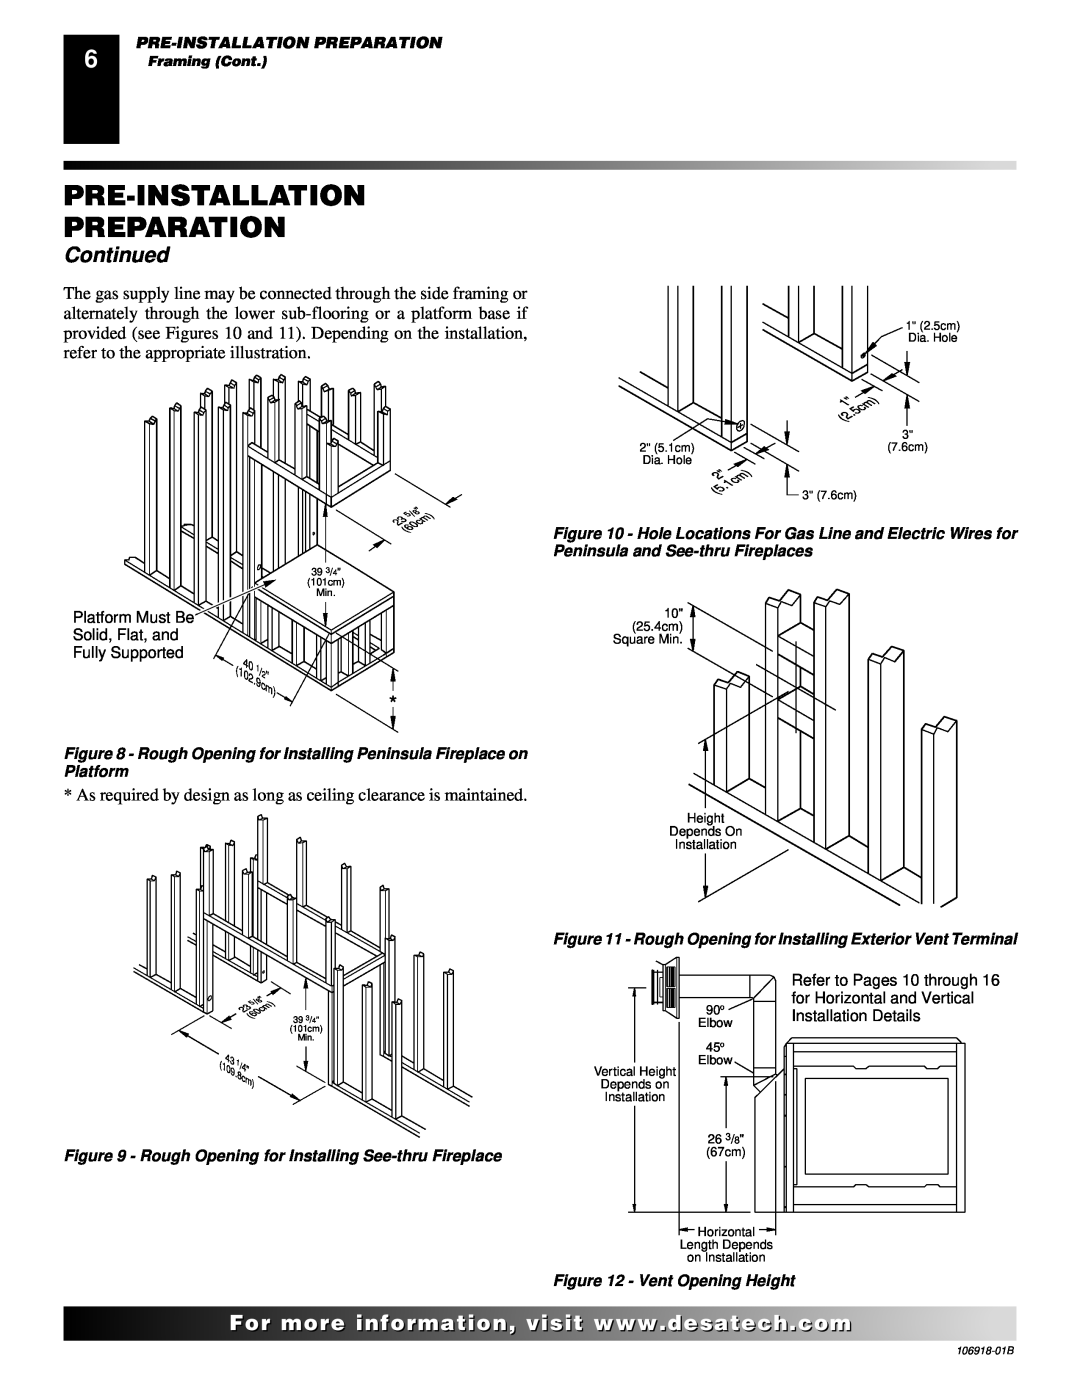 Desa VDDVF36PN/PP, VDDVF36STN/STP installation manual Pre-Installation Preparation, Continued, Pre-Installationpreparation 